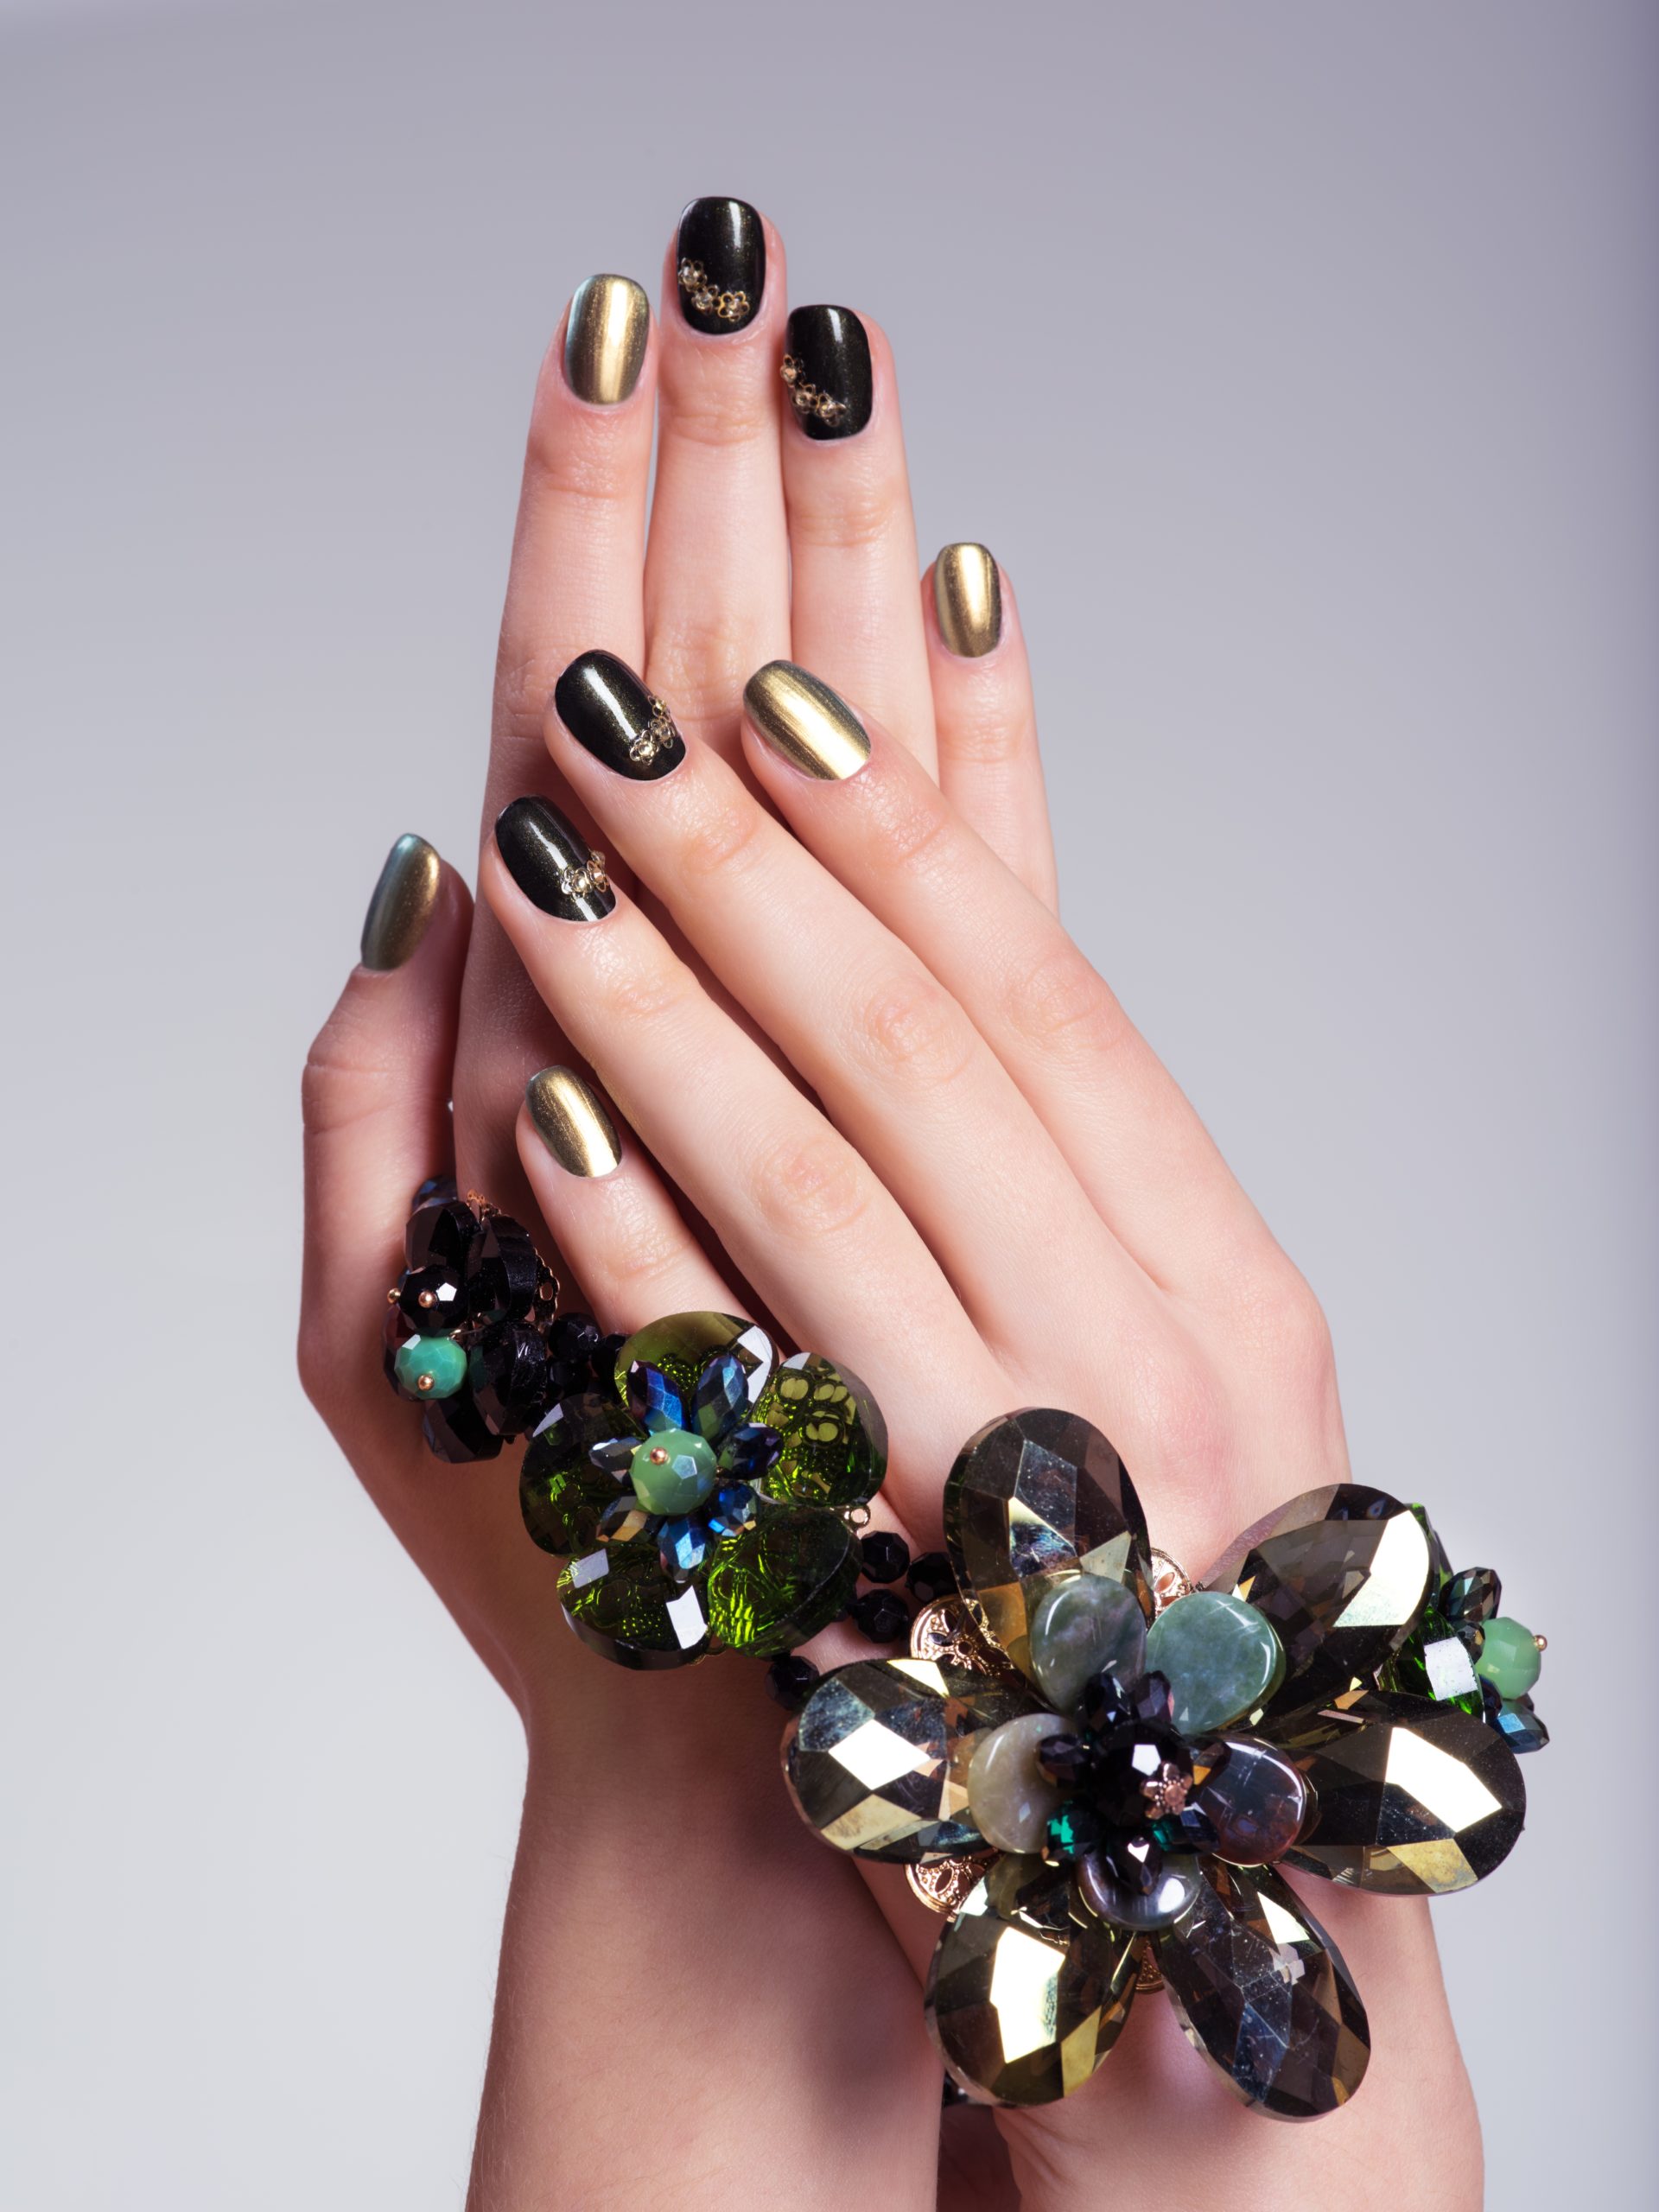 Les ongles d'une belle femme grâce à la manucure avec nail art créative et des bijoux